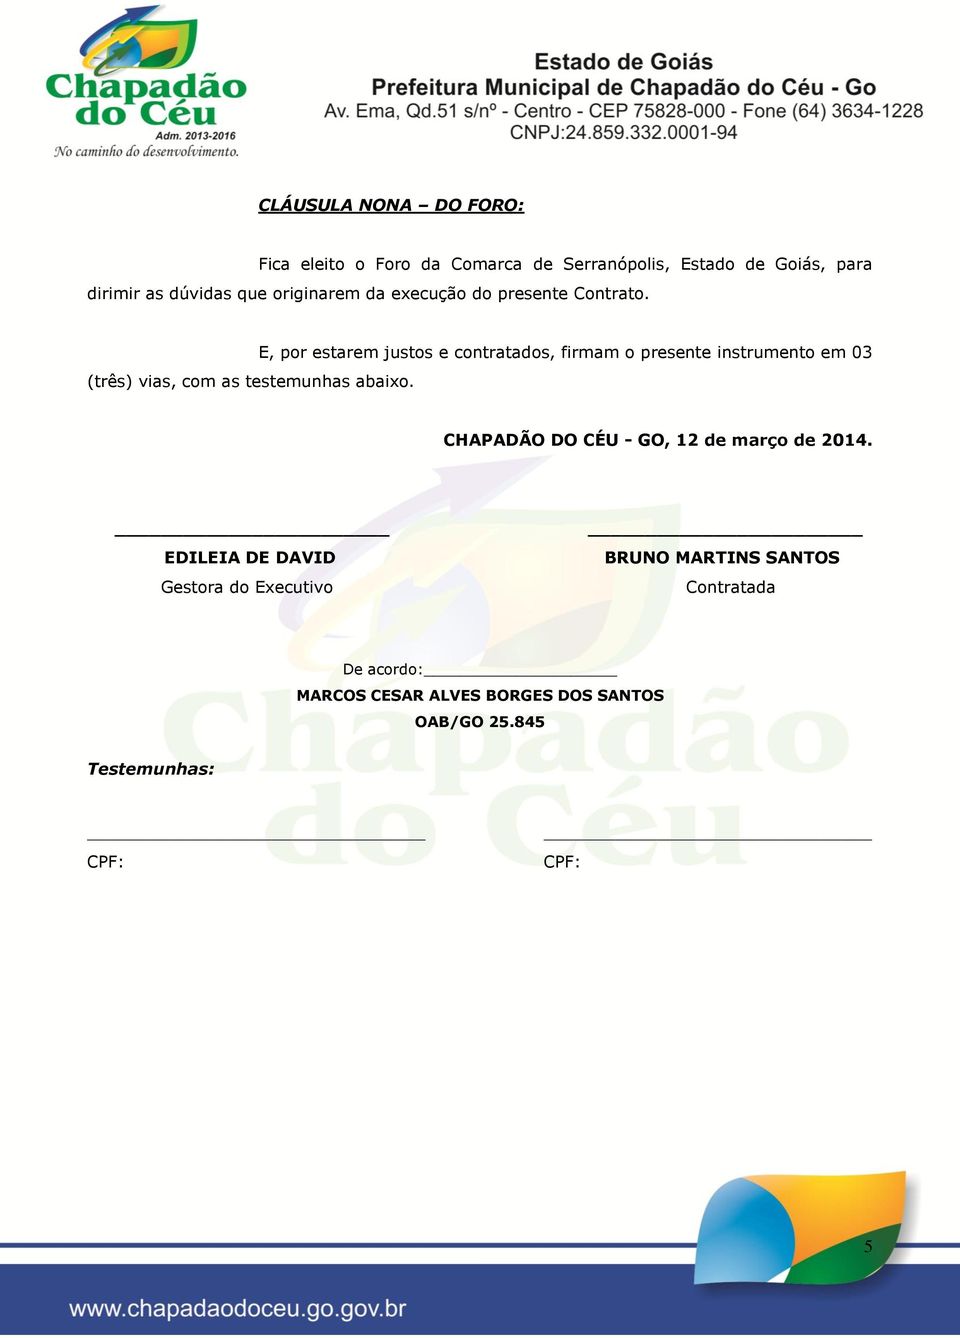 E, por estarem justos e contratados, firmam o presente instrumento em 03 CHAPADÃO DO CÉU - GO, 12 de março de 2014.